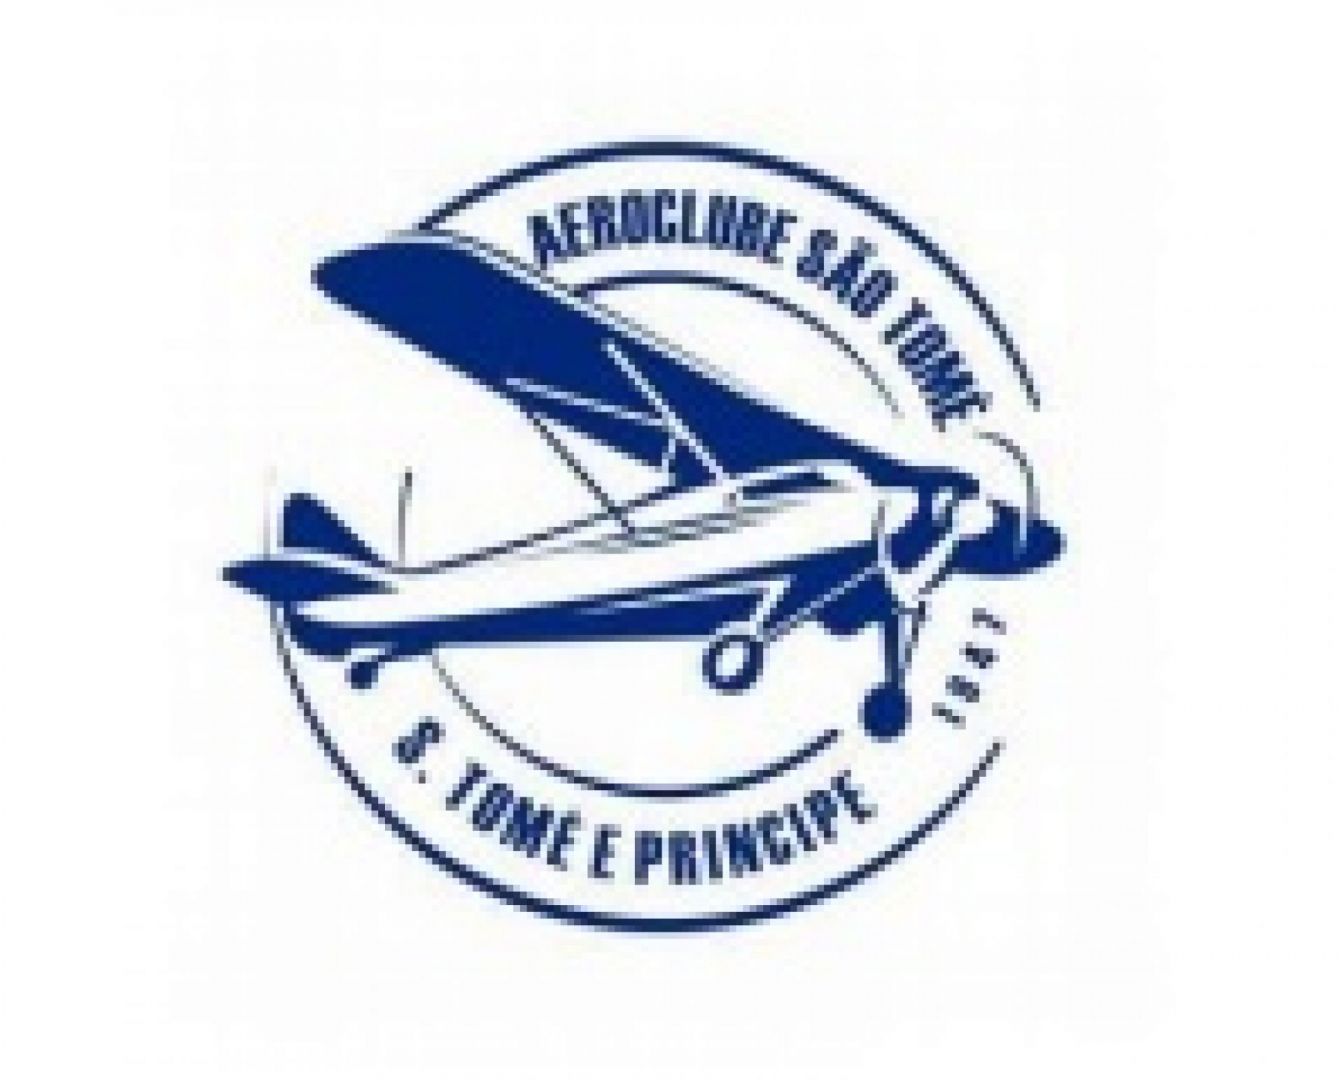 Aeroclube de São Tomé